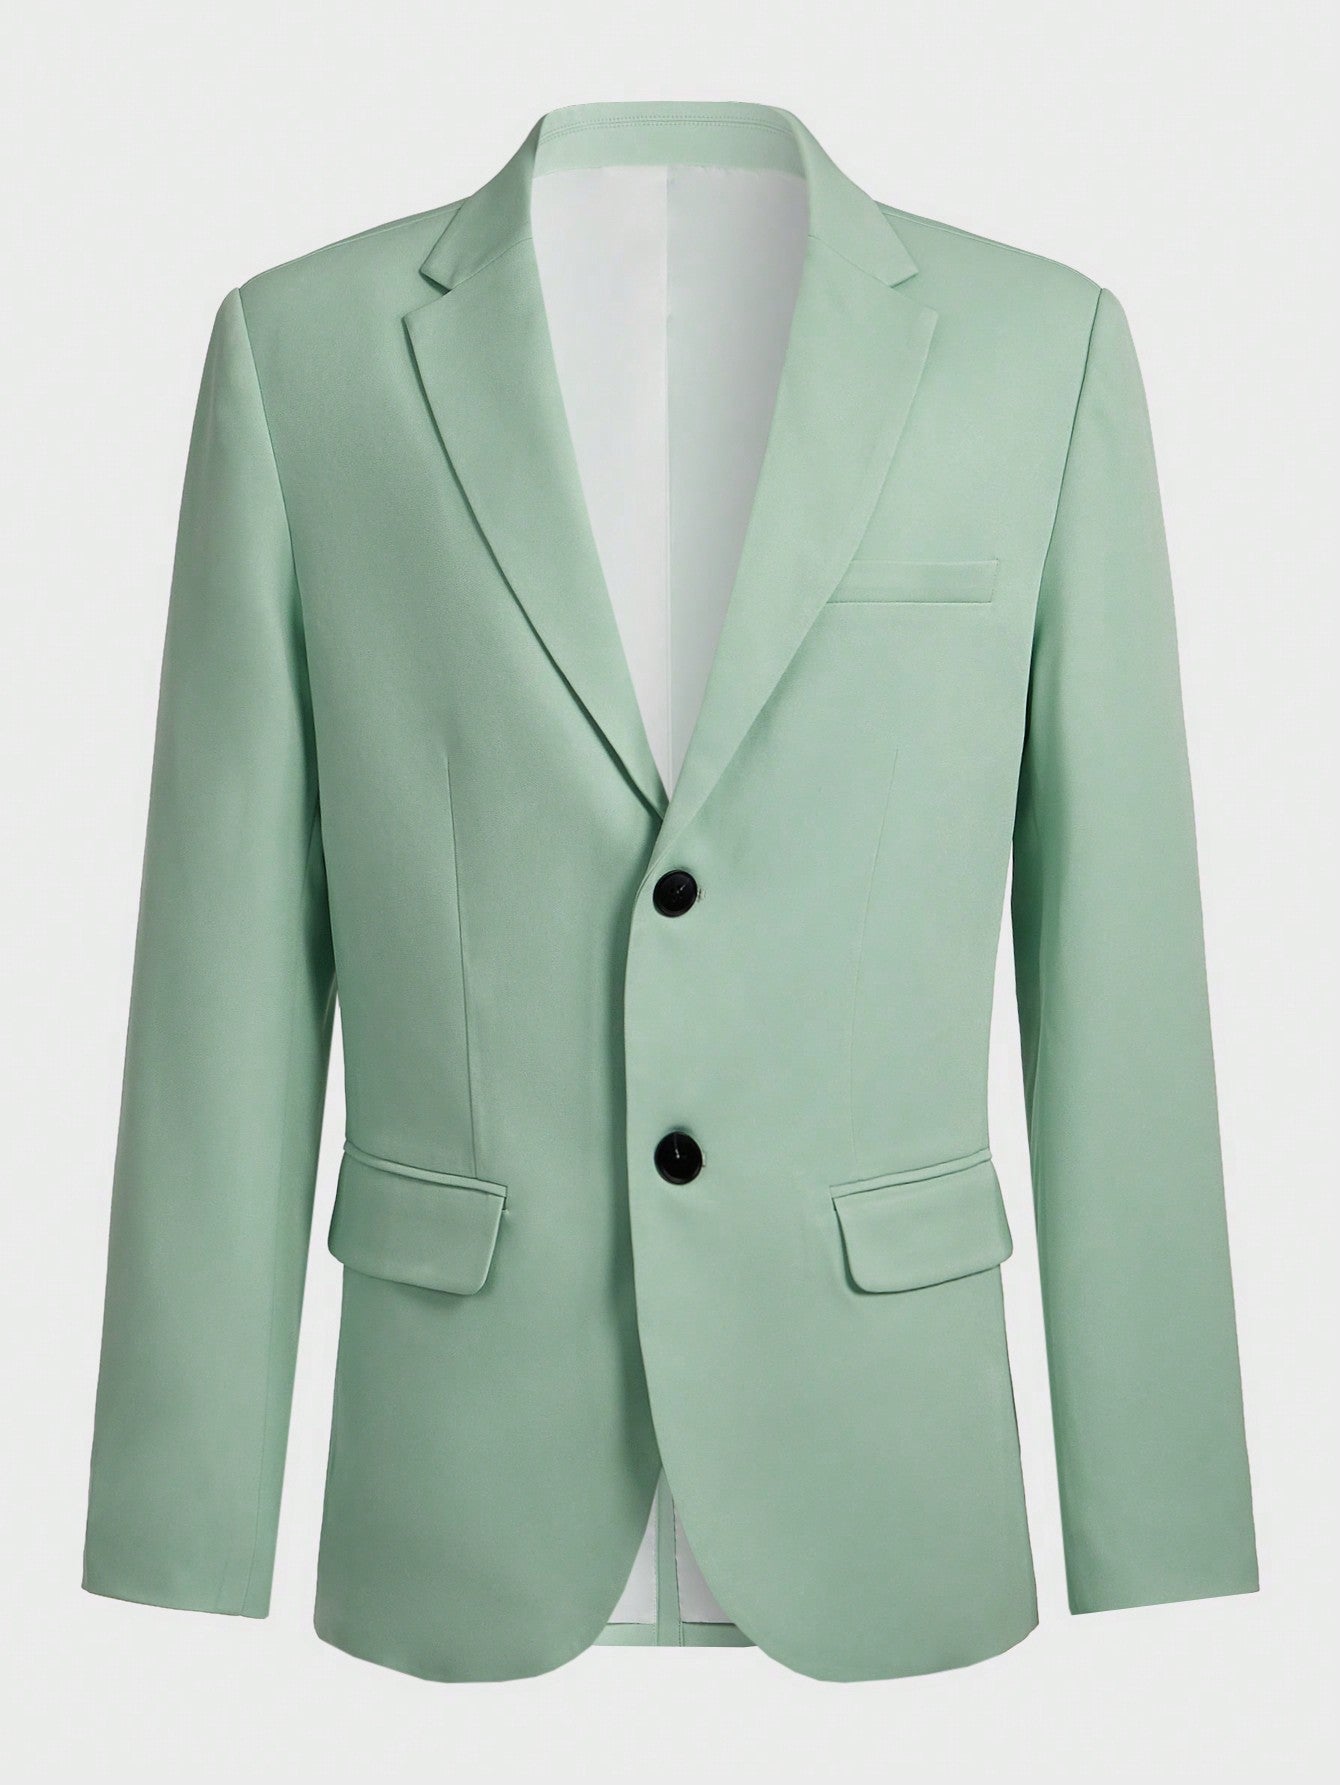 Men's Notched Lapel Suit Jacket